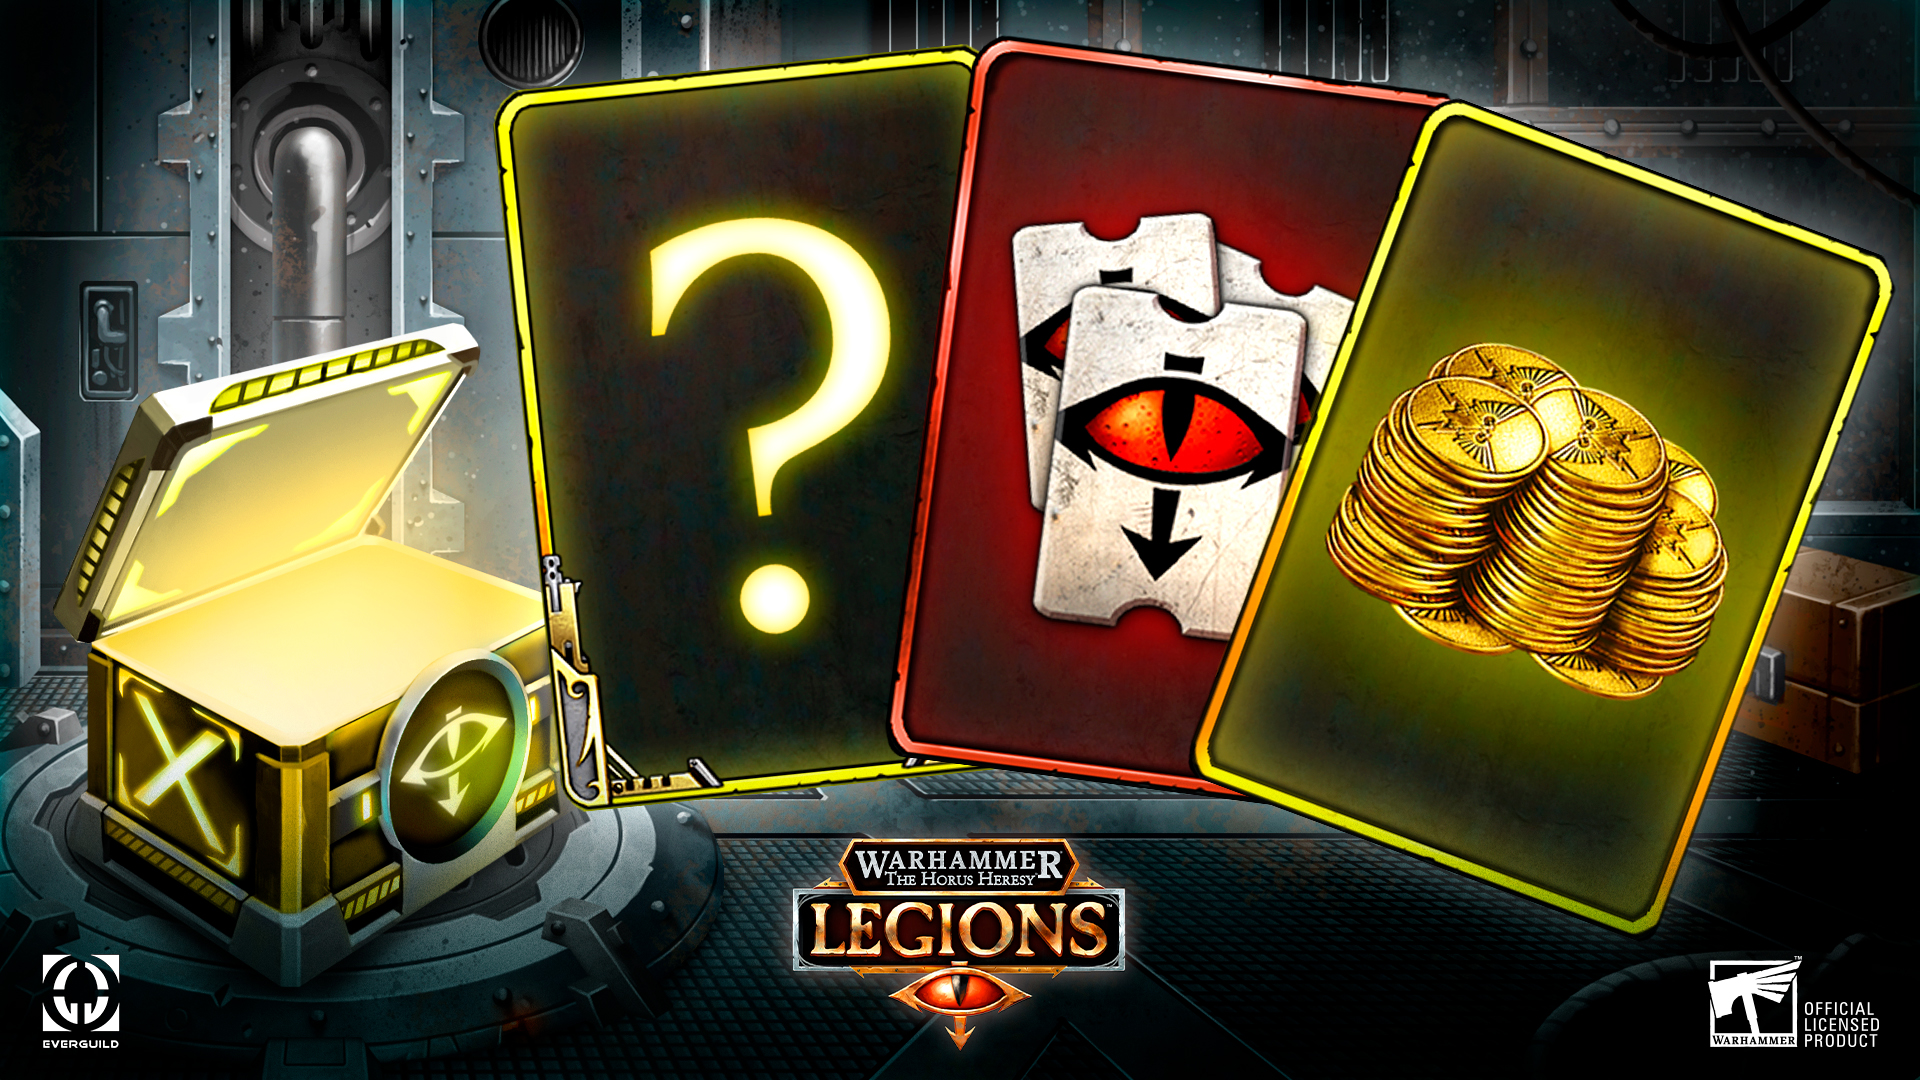 Tournament rewards Legions